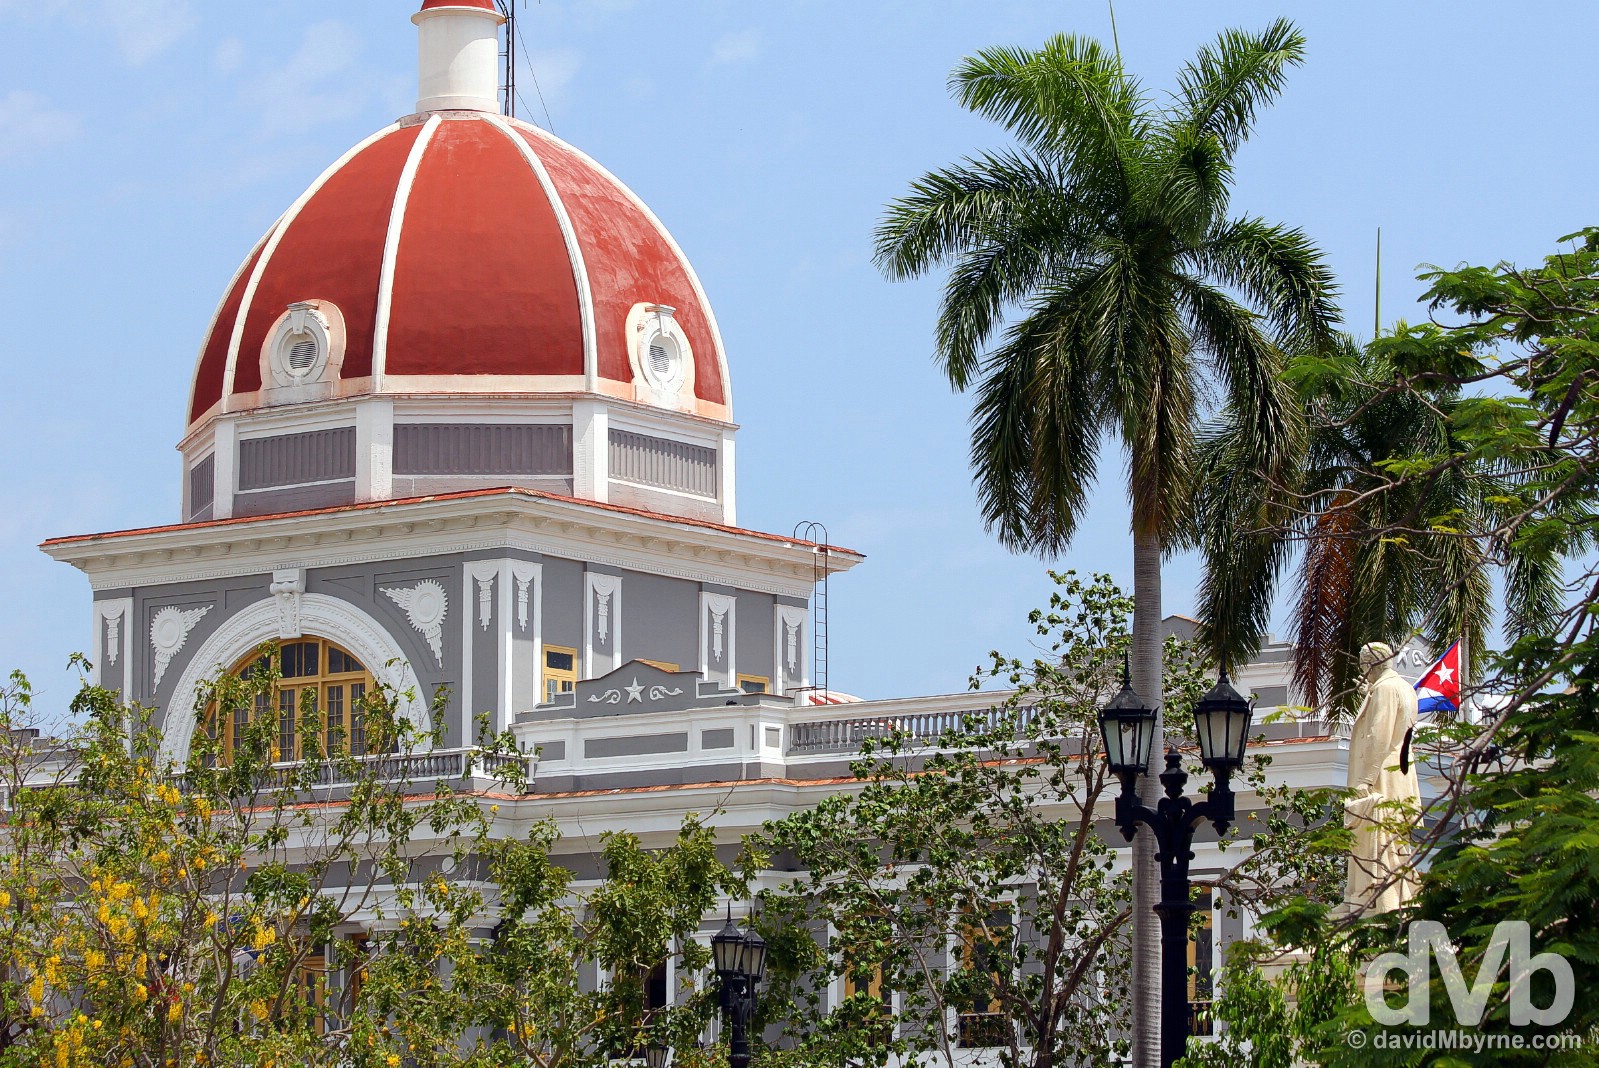 The central cupola of the Palacio de Gobierno as seen from Parque Jose Marti in Cienfuegos, Cuba. May 8, 2015.